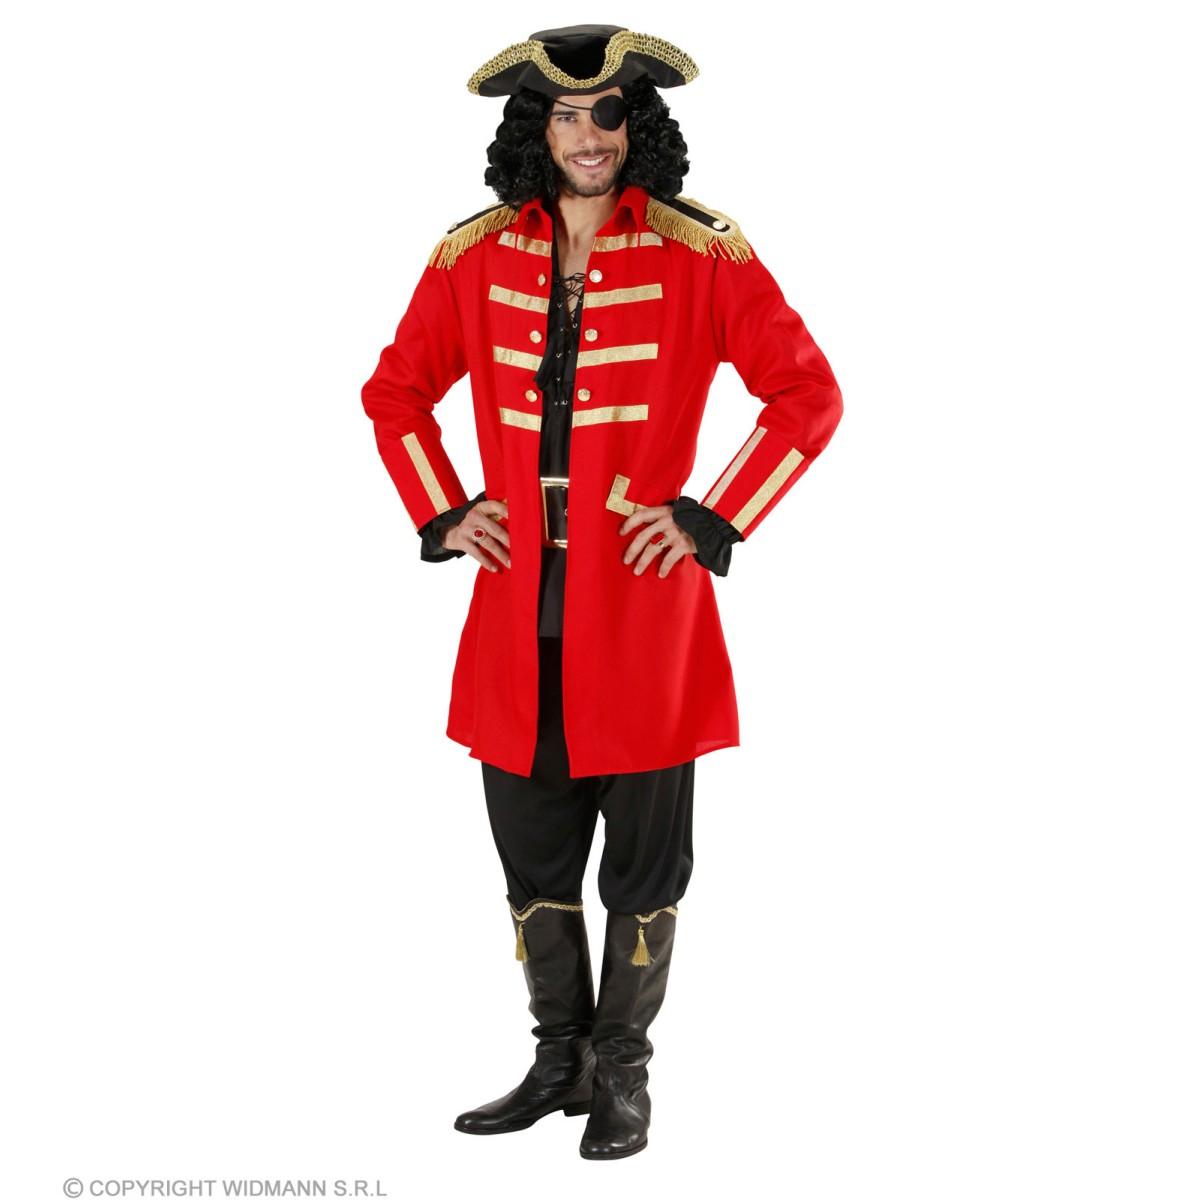 Widmann Costume Giacca Pirata Capitano Uomo WD-04589 WD-04589 2311250000220